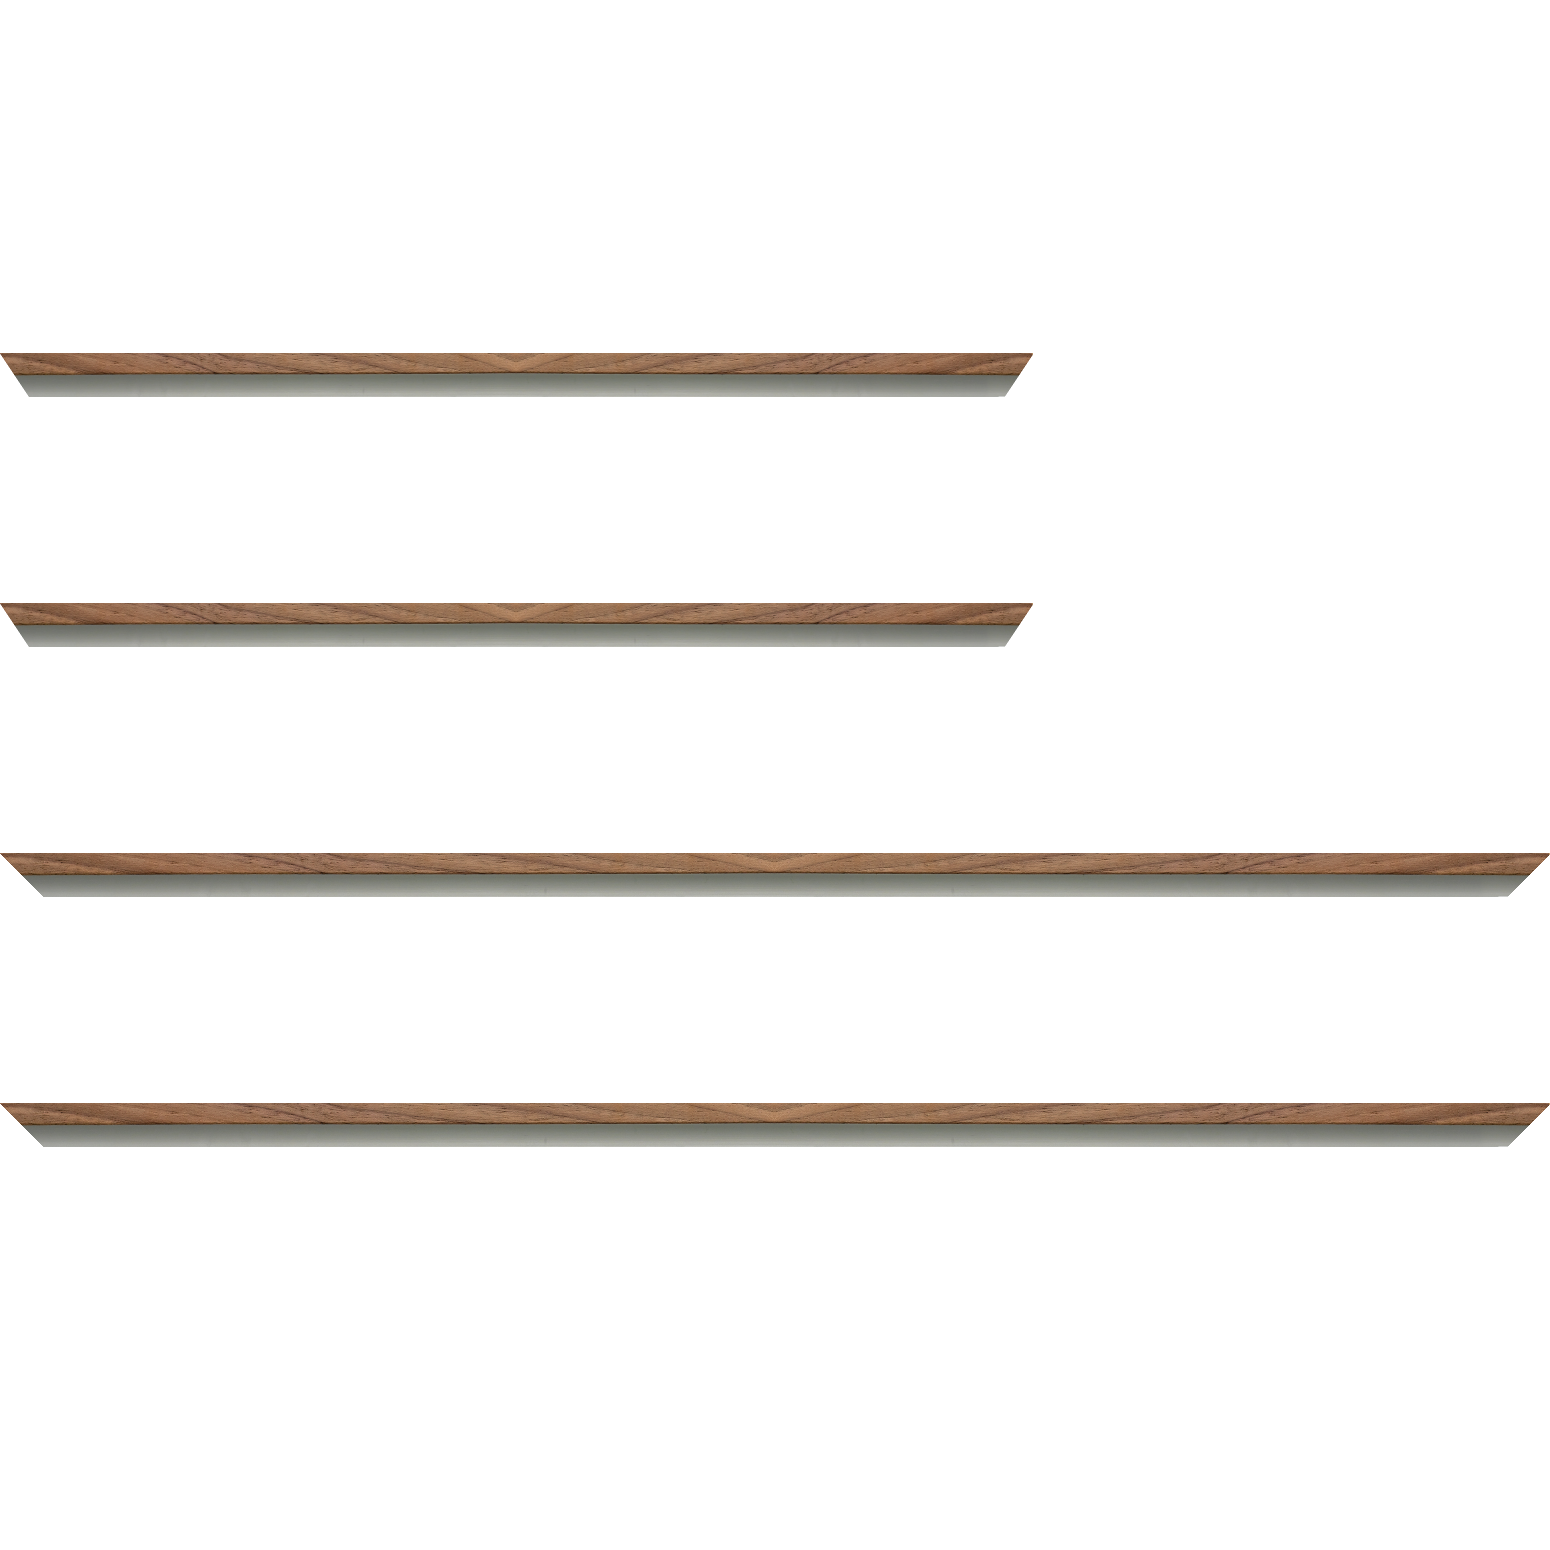 Baguette aluminium profil plat largeur 8mm, placage véritable noyer ,(le sujet qui sera glissé dans le cadre sera en retrait de 6mm de la face du cadre assurant un effet très contemporain) mise en place du sujet rapide et simple: assemblage du cadre par double équerre à vis (livré avec le système d'accrochage qui se glisse dans le profilé) encadrement non assemblé,  livré avec son sachet d'accessoires - 59.4x84.1